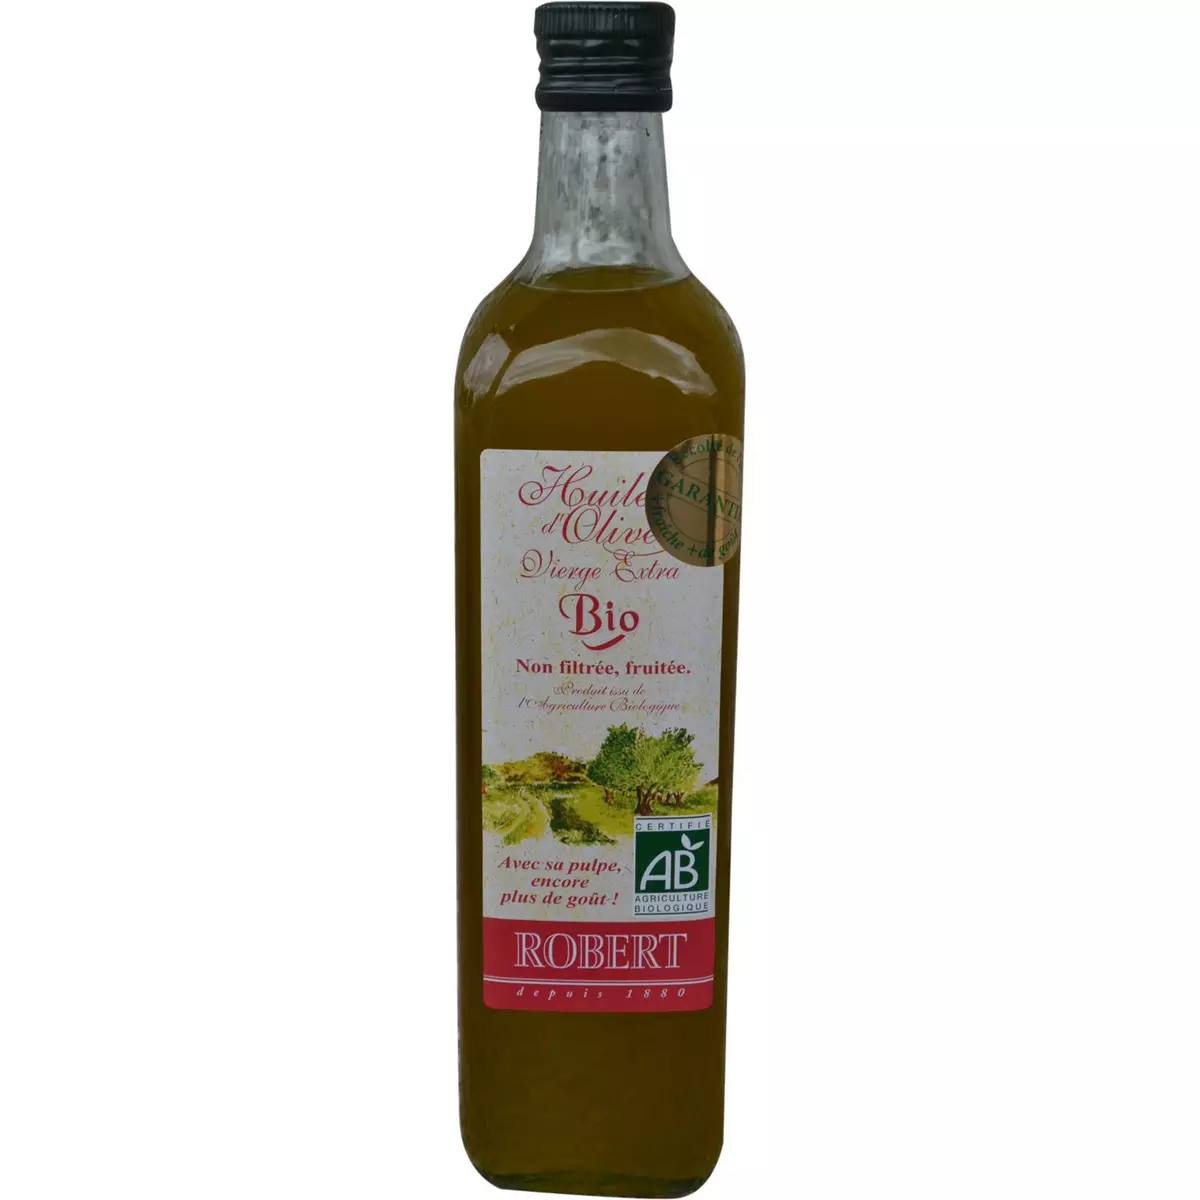 ROBERT Huile d'olive vierge extra bio non filtrée et fruitée 75cl